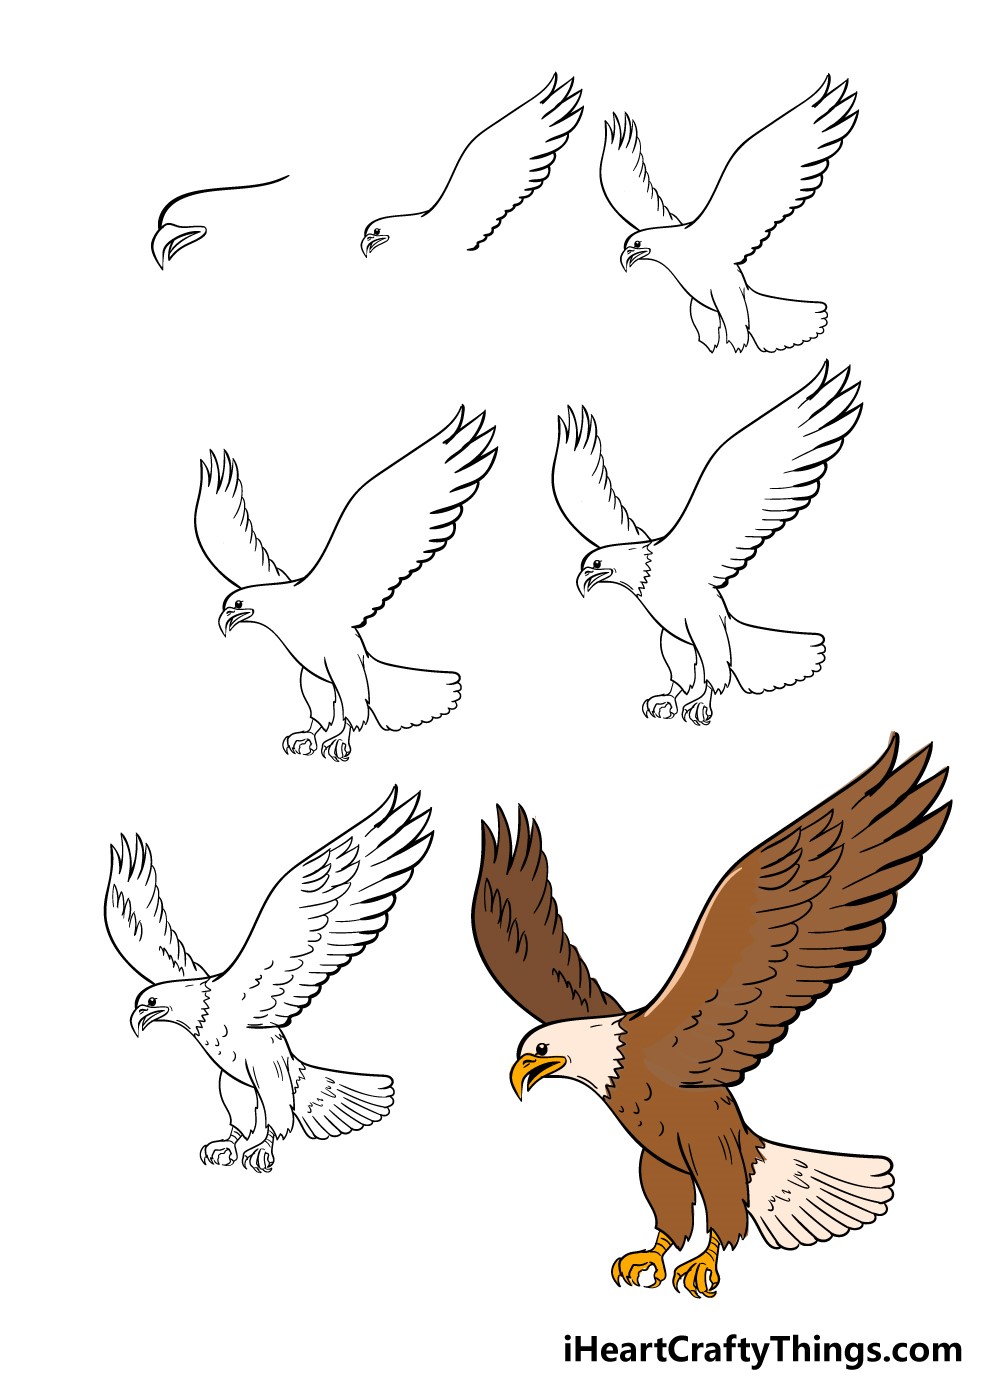 Eagle idea 1 Drawing Ideas